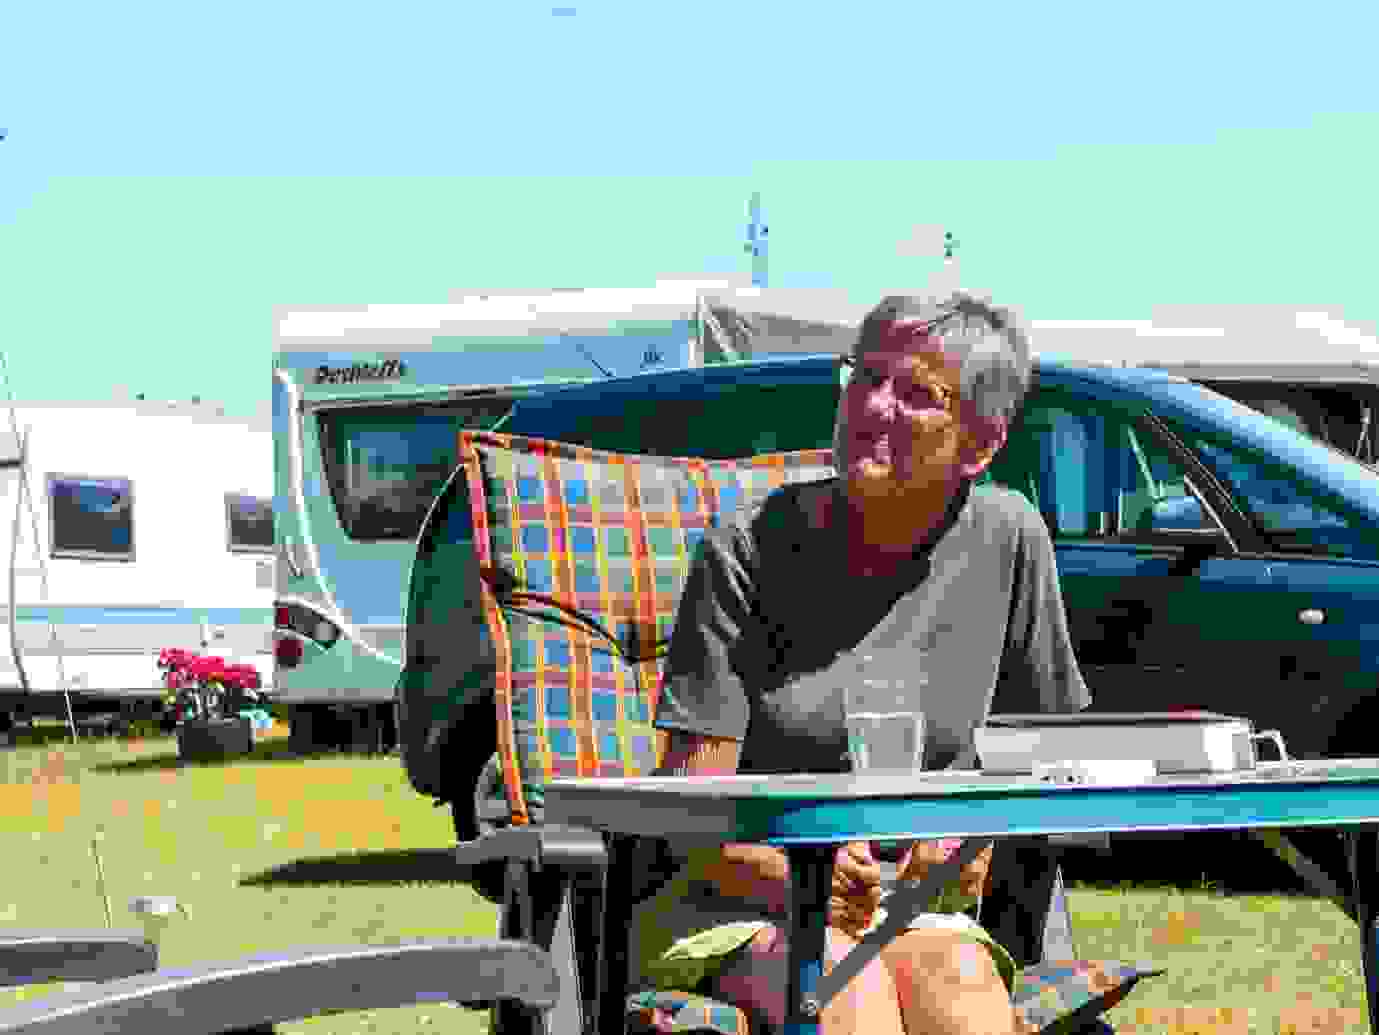 Seniortilbud - Pensionisttilbud - i egen vogn